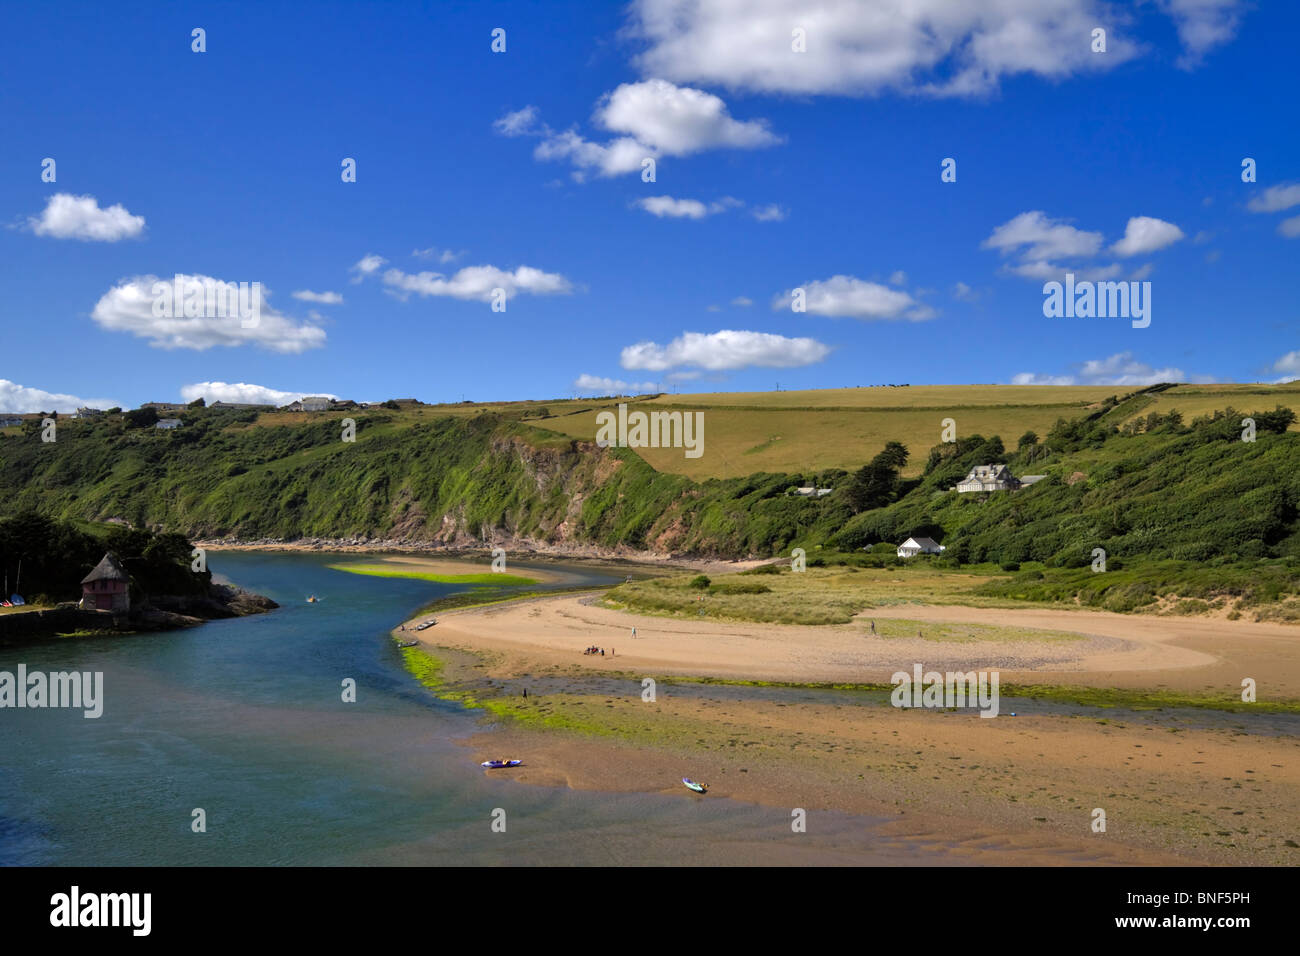 Die Mündung des Flusses Avon nahe Bantham Strand, Devon. Familien spielen am Strand bei Ebbe. Stockfoto